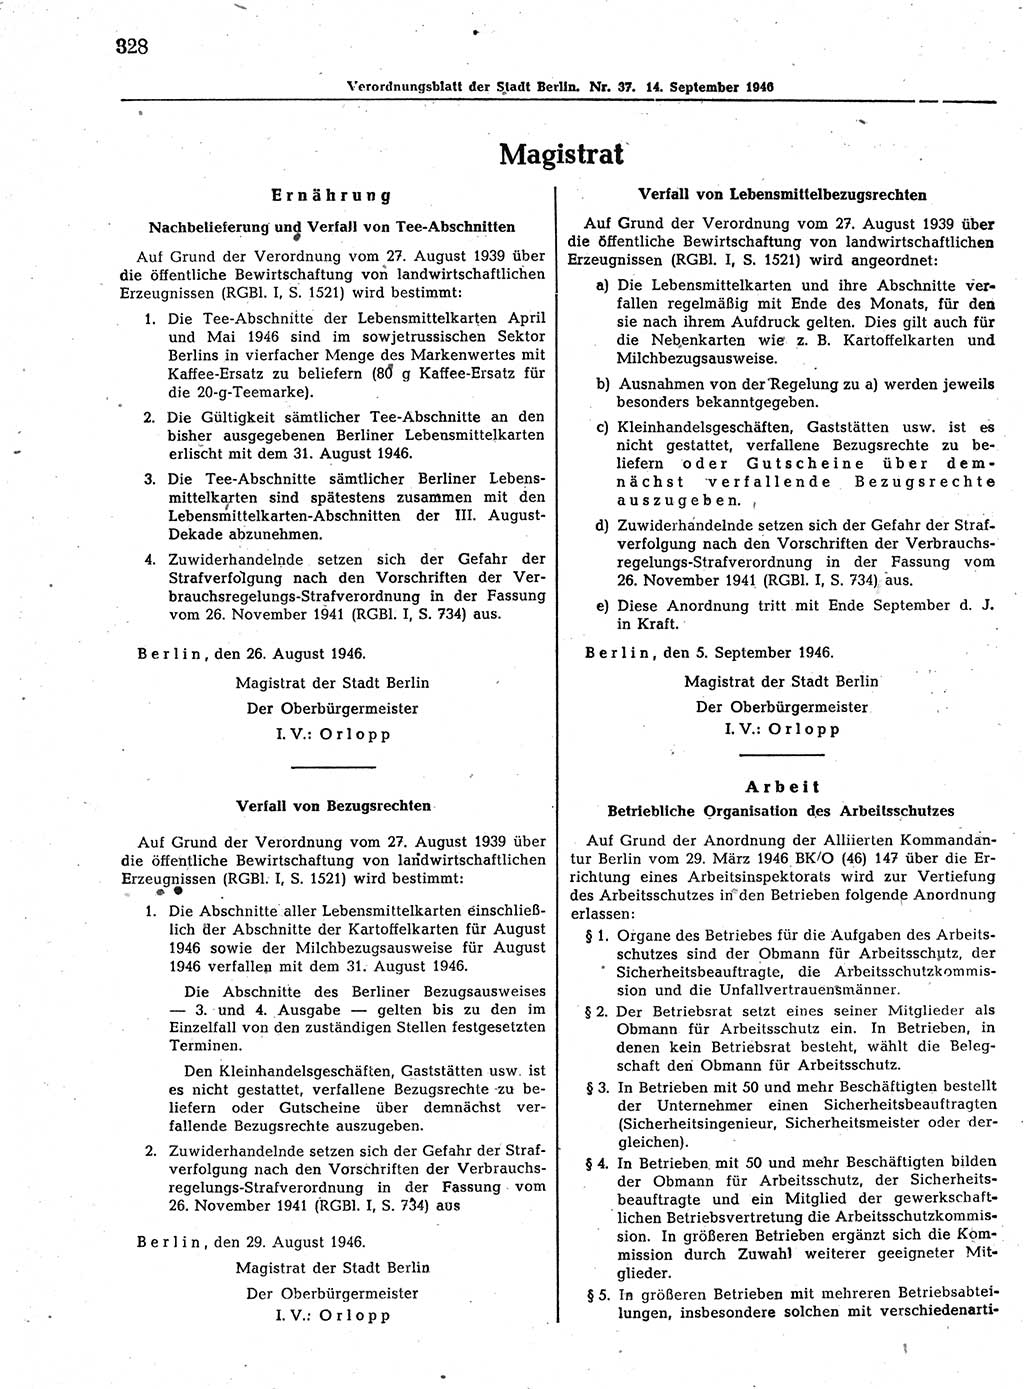 Verordnungsblatt (VOBl.) der Stadt Berlin, für Groß-Berlin 1946, Seite 328 (VOBl. Bln. 1946, S. 328)